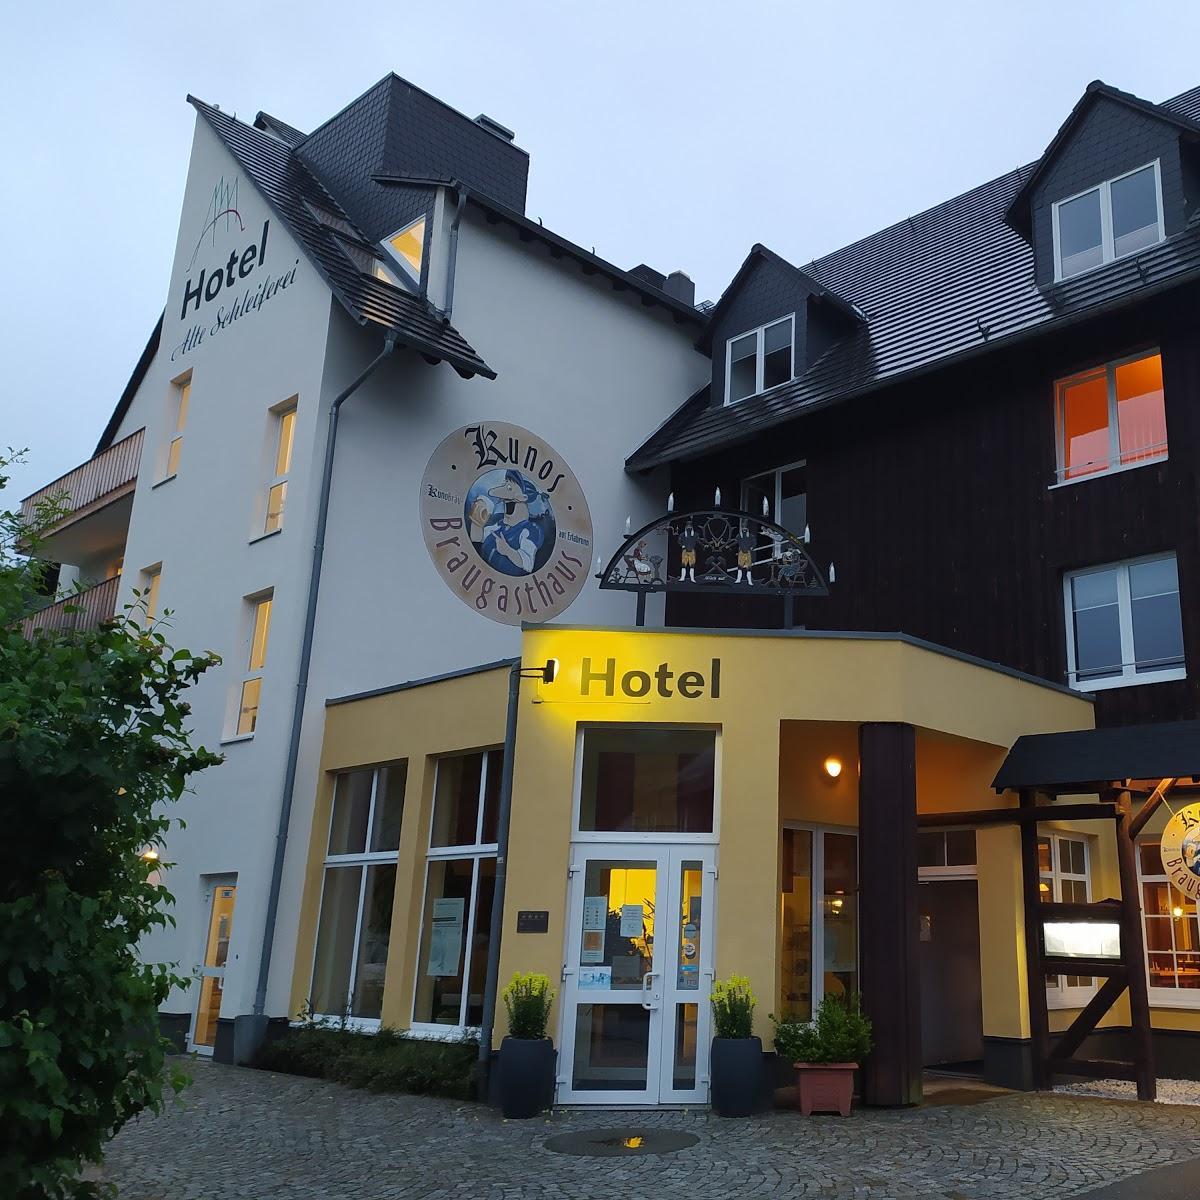 Restaurant "Ferienhaus Liselotte Baumann" in  Breitenbrunn-Erzgebirge